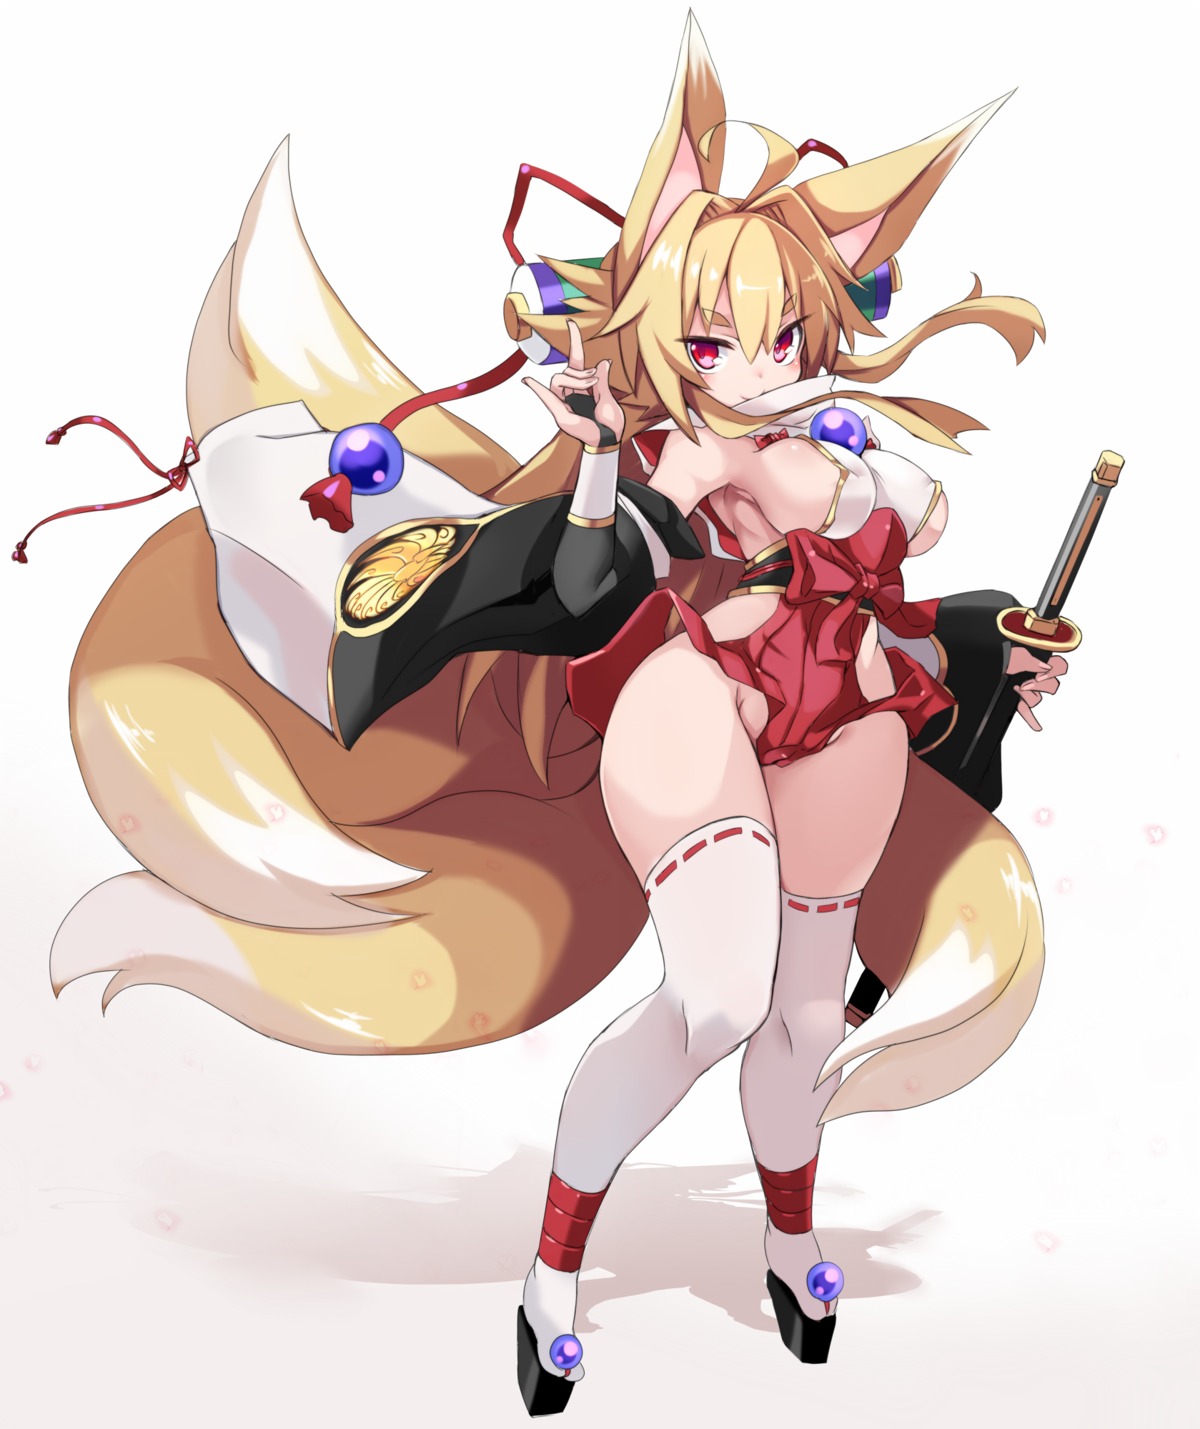 animal_ears erect_nipples izuna_(shinrabansho) karukan_(monjya) kitsune miko no_bra nopan shinrabansho sword tail thighhighs